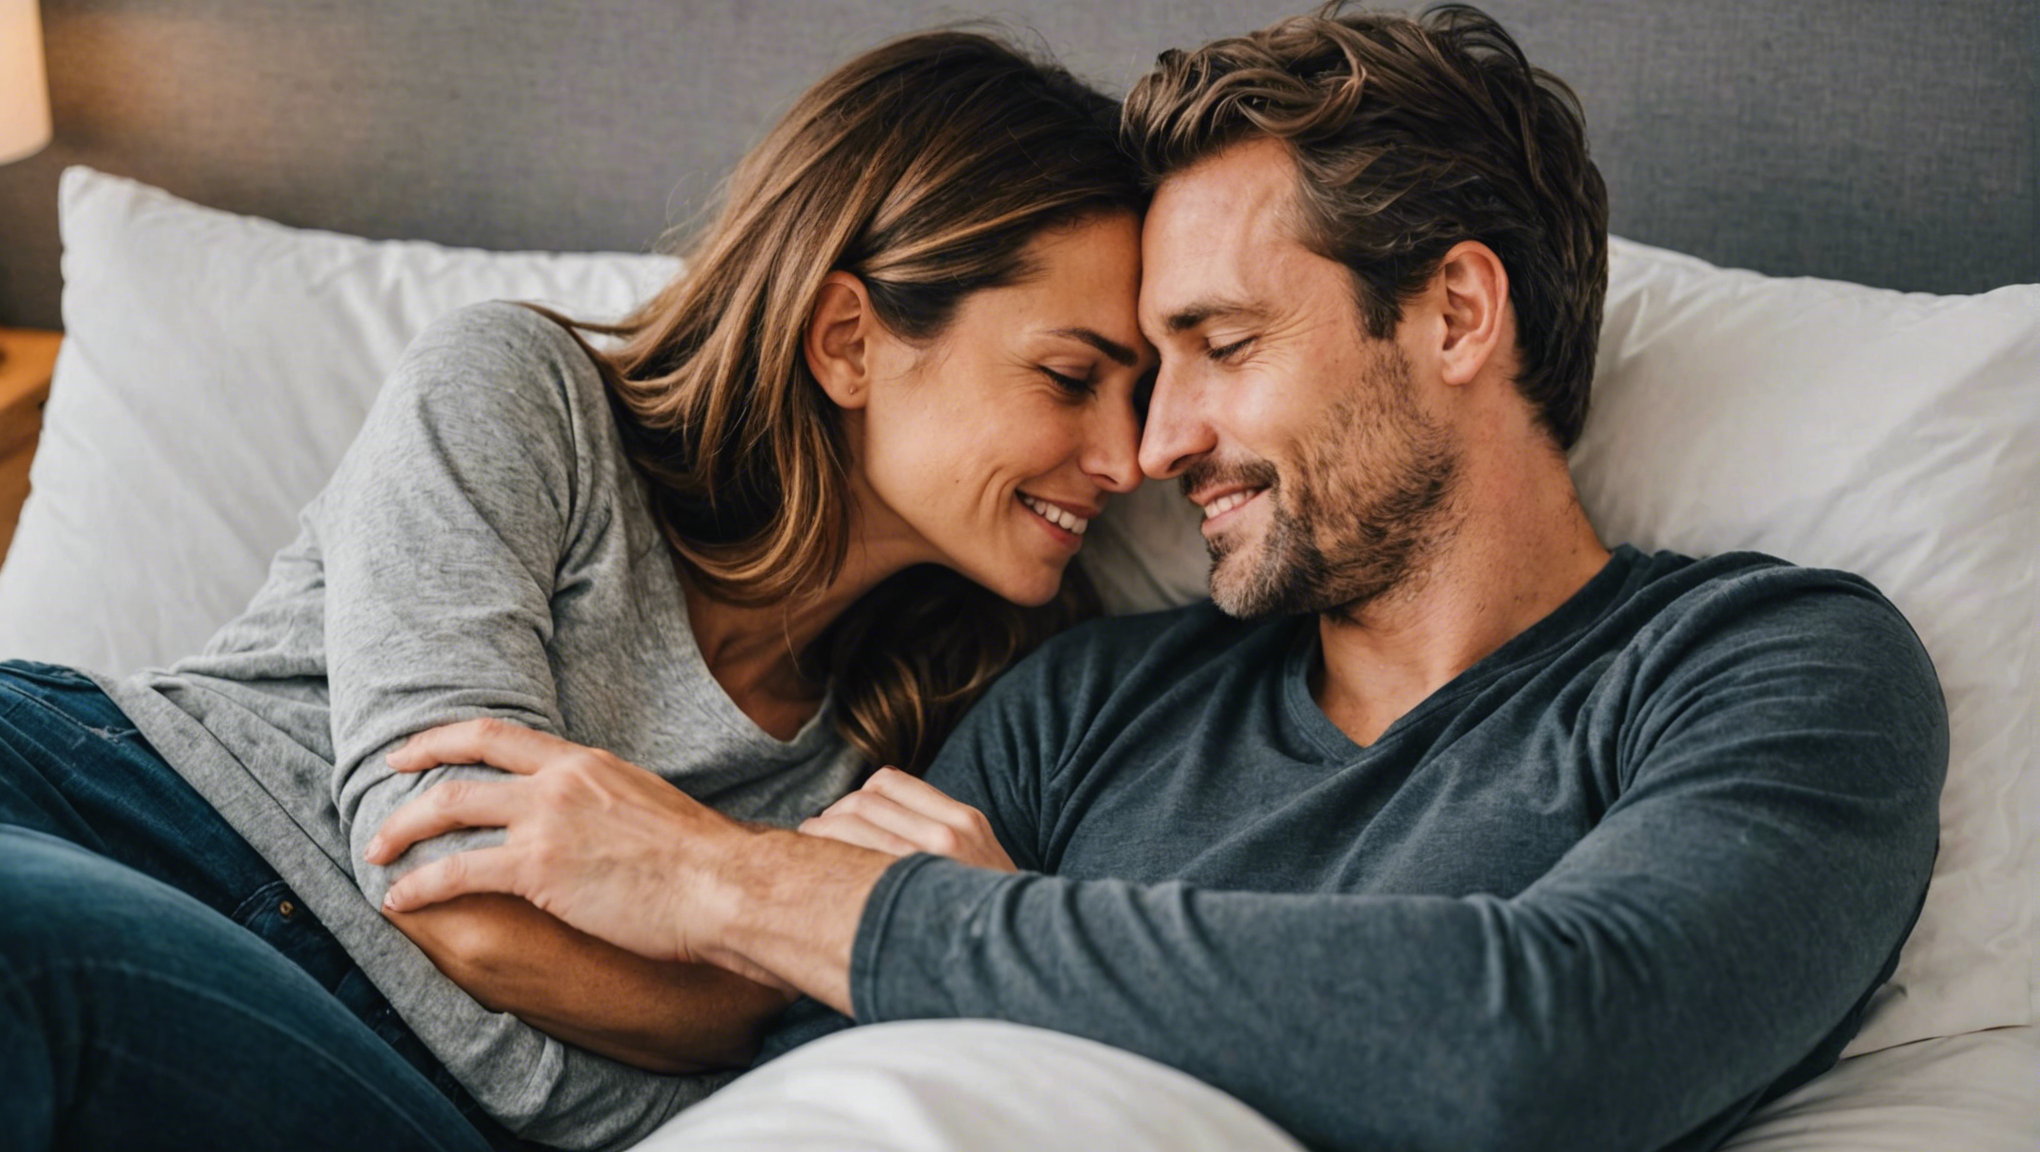 découvrez pourquoi les couples qui partagent le même lit sont souvent plus heureux ensemble. des explications sur les bienfaits du sommeil commun et ses effets positifs sur la relation amoureuse.